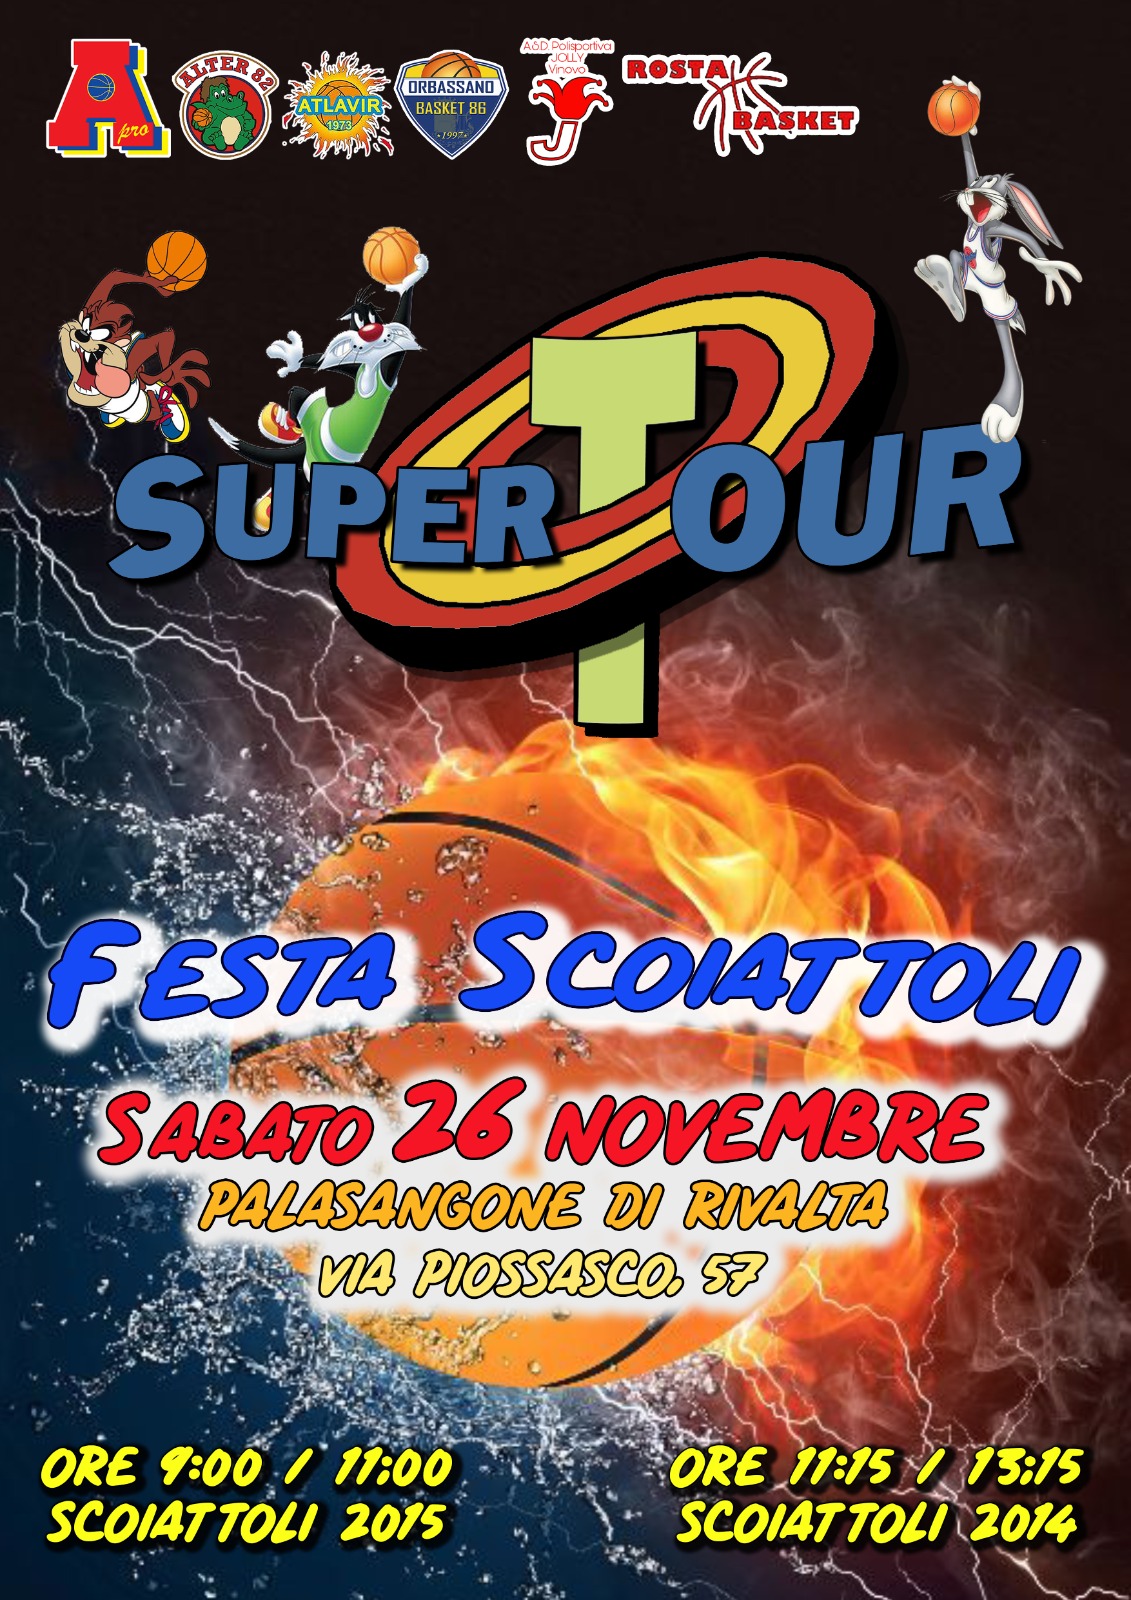 Supertour: Festa Scoiattoli sabato 26 novembre 2022 al PalaSangone di Rivalta